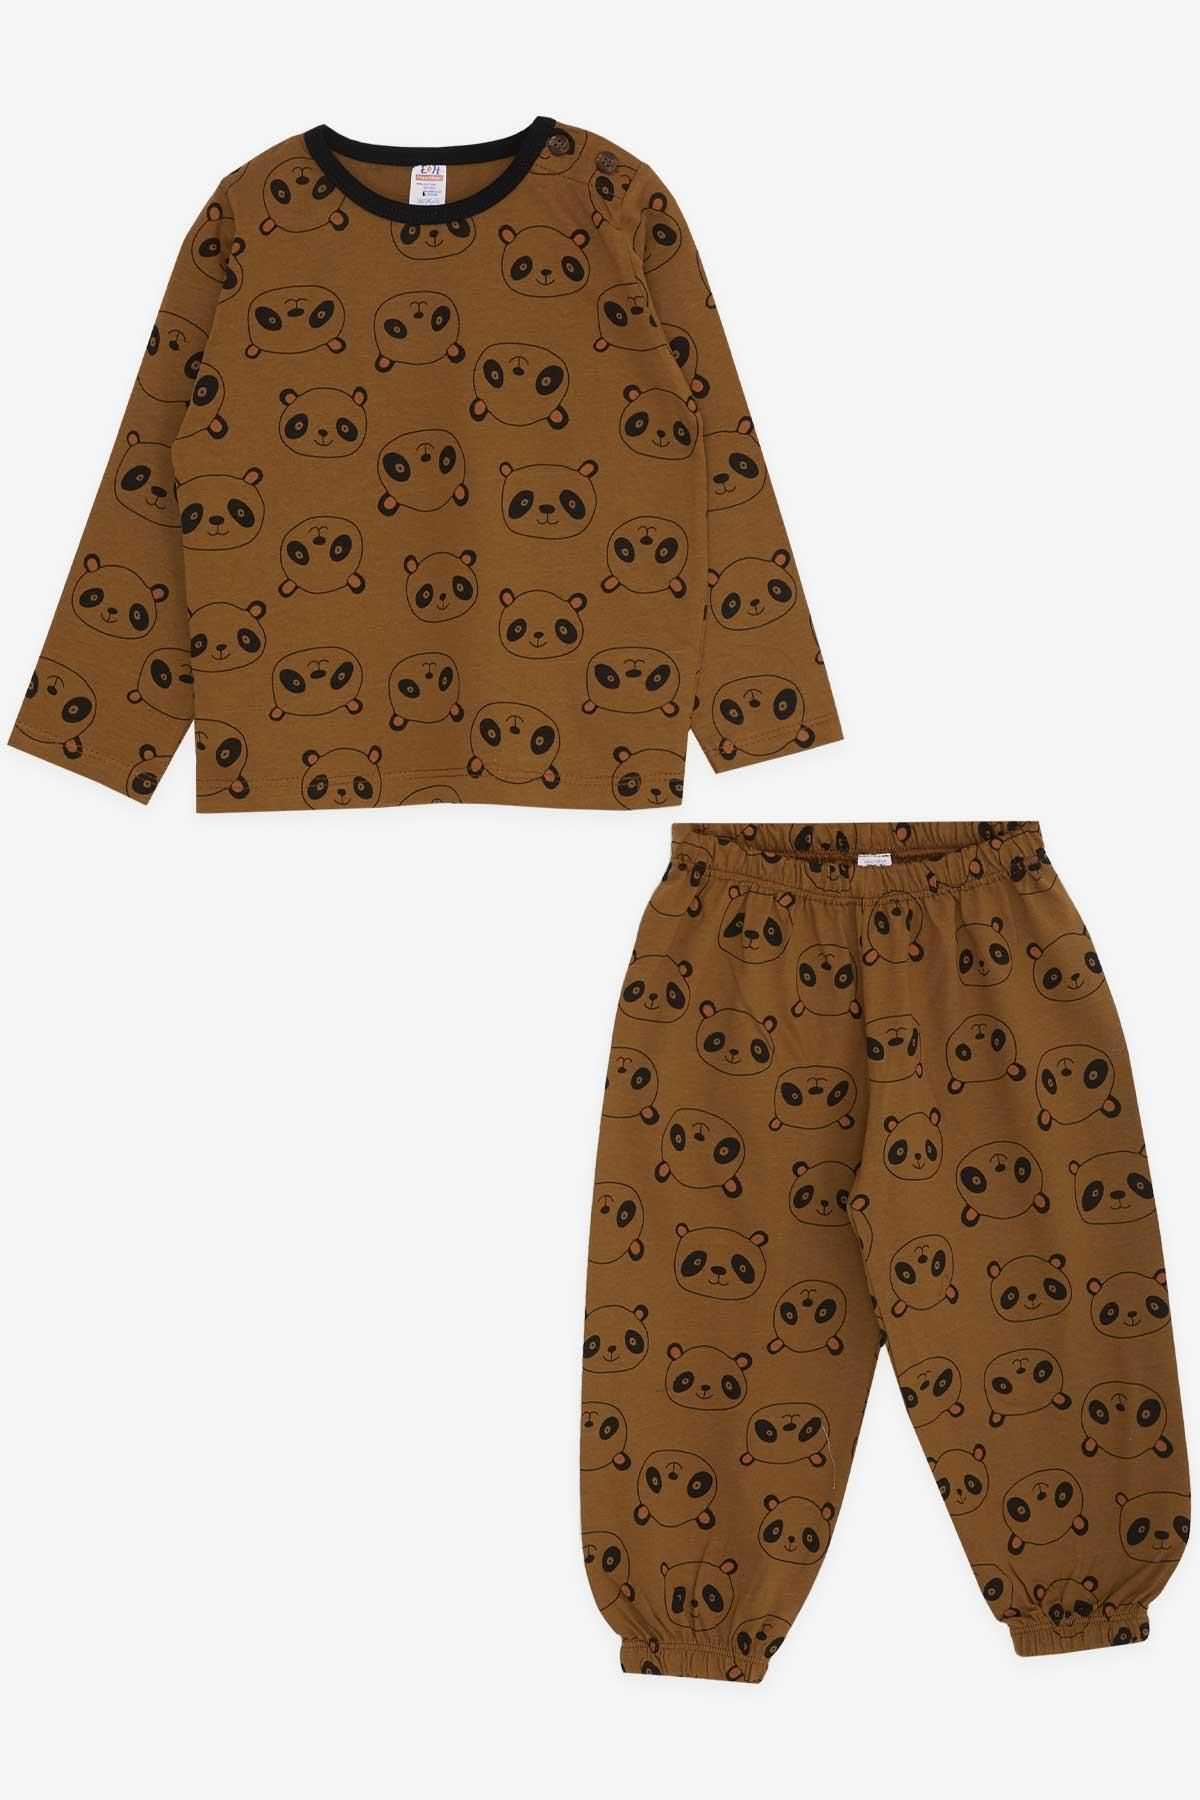 Breeze Erkek Bebek Pijama Takımı Panda Desenli 9 Ay-3 Yaş, Açık Kahverengi